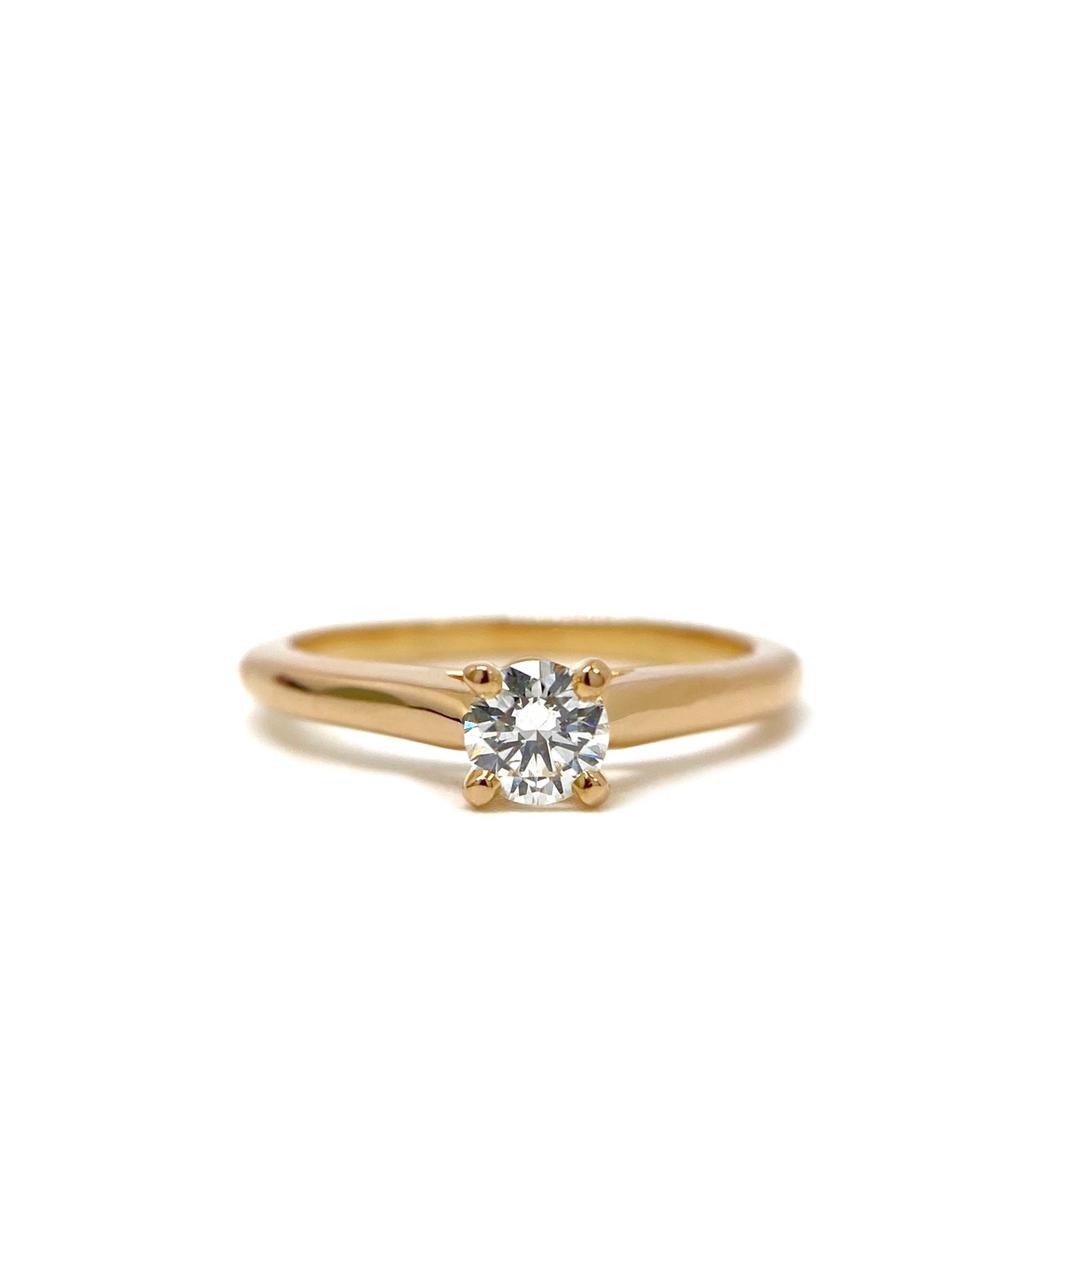 CARTIER Золотое кольцо из розового золота, фото 1